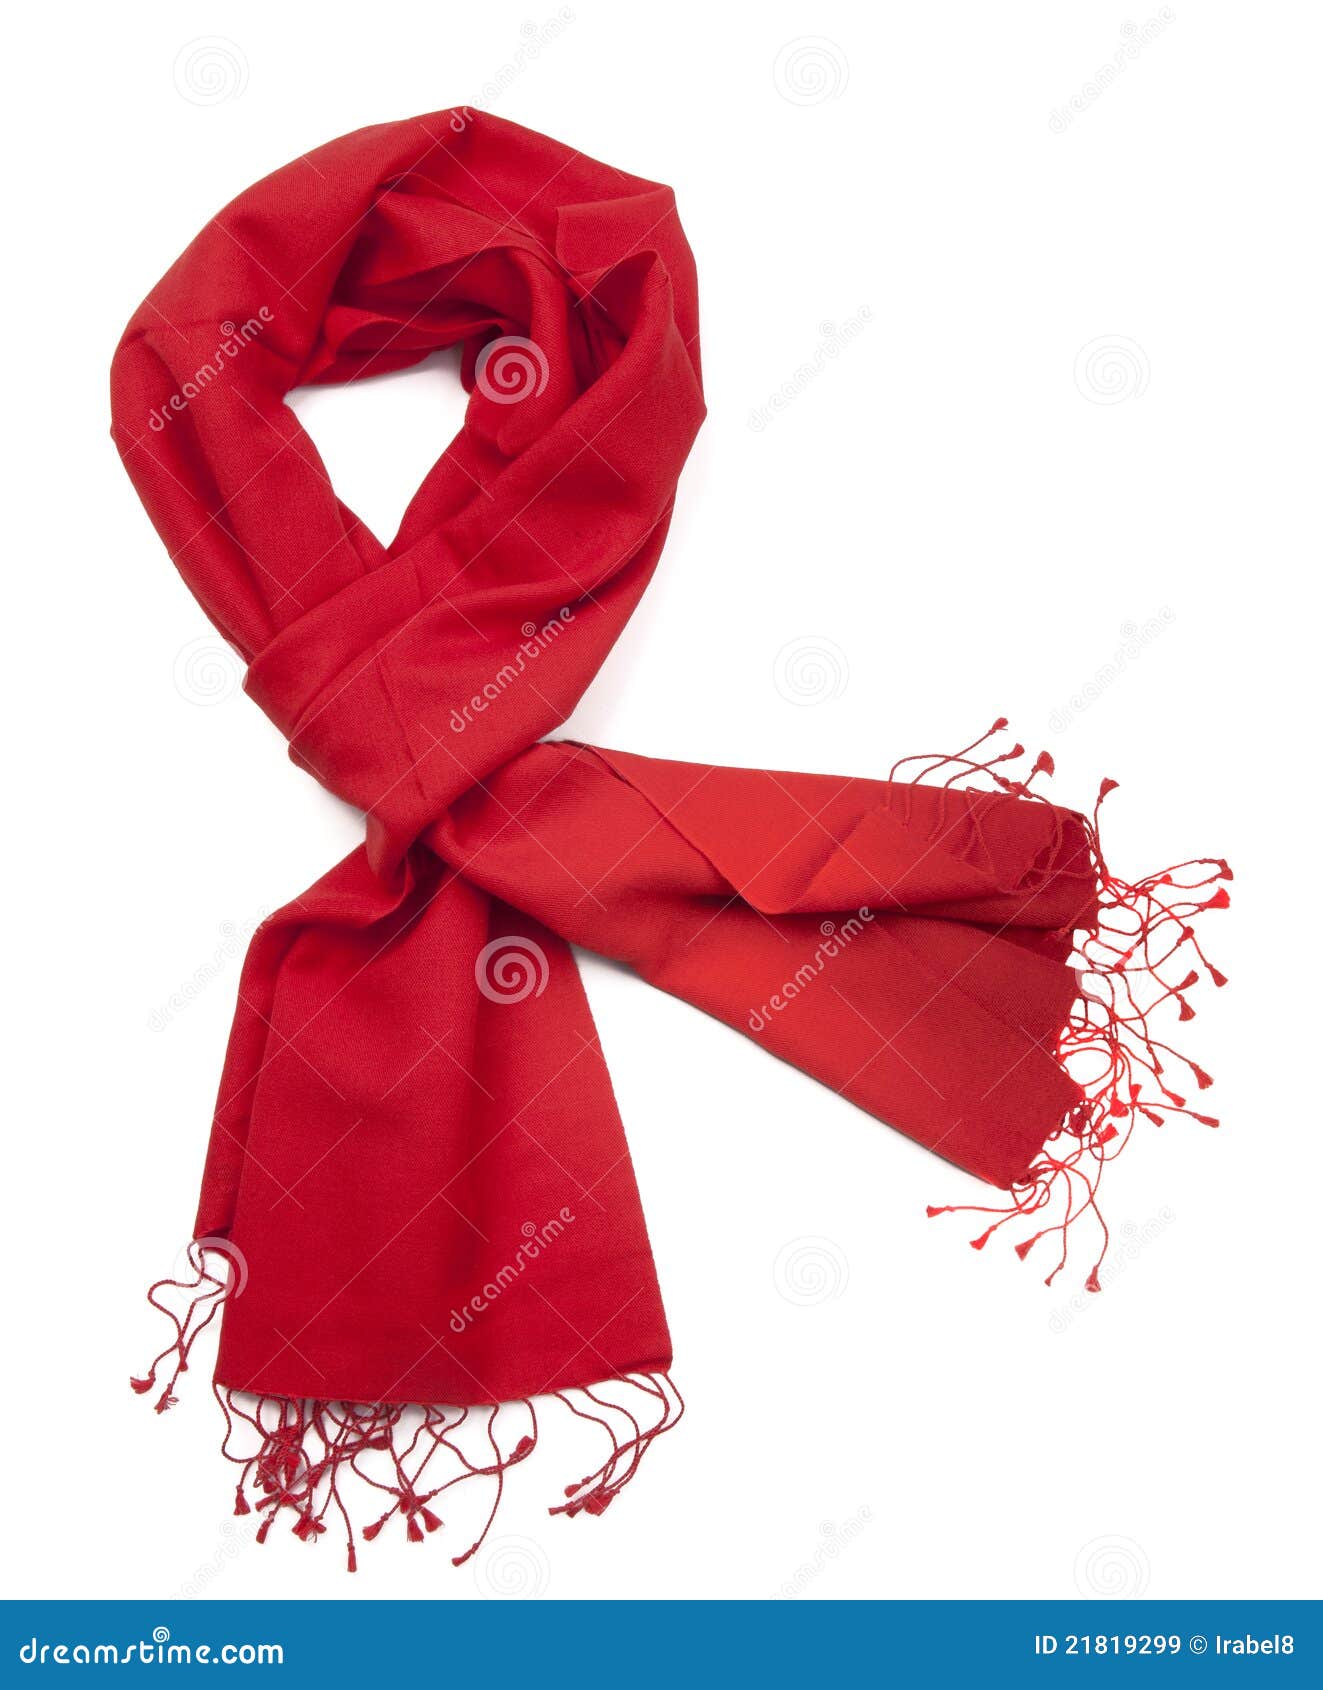 Rode sjaal of pashmina stock afbeelding. Image of achtergronden - 21819299